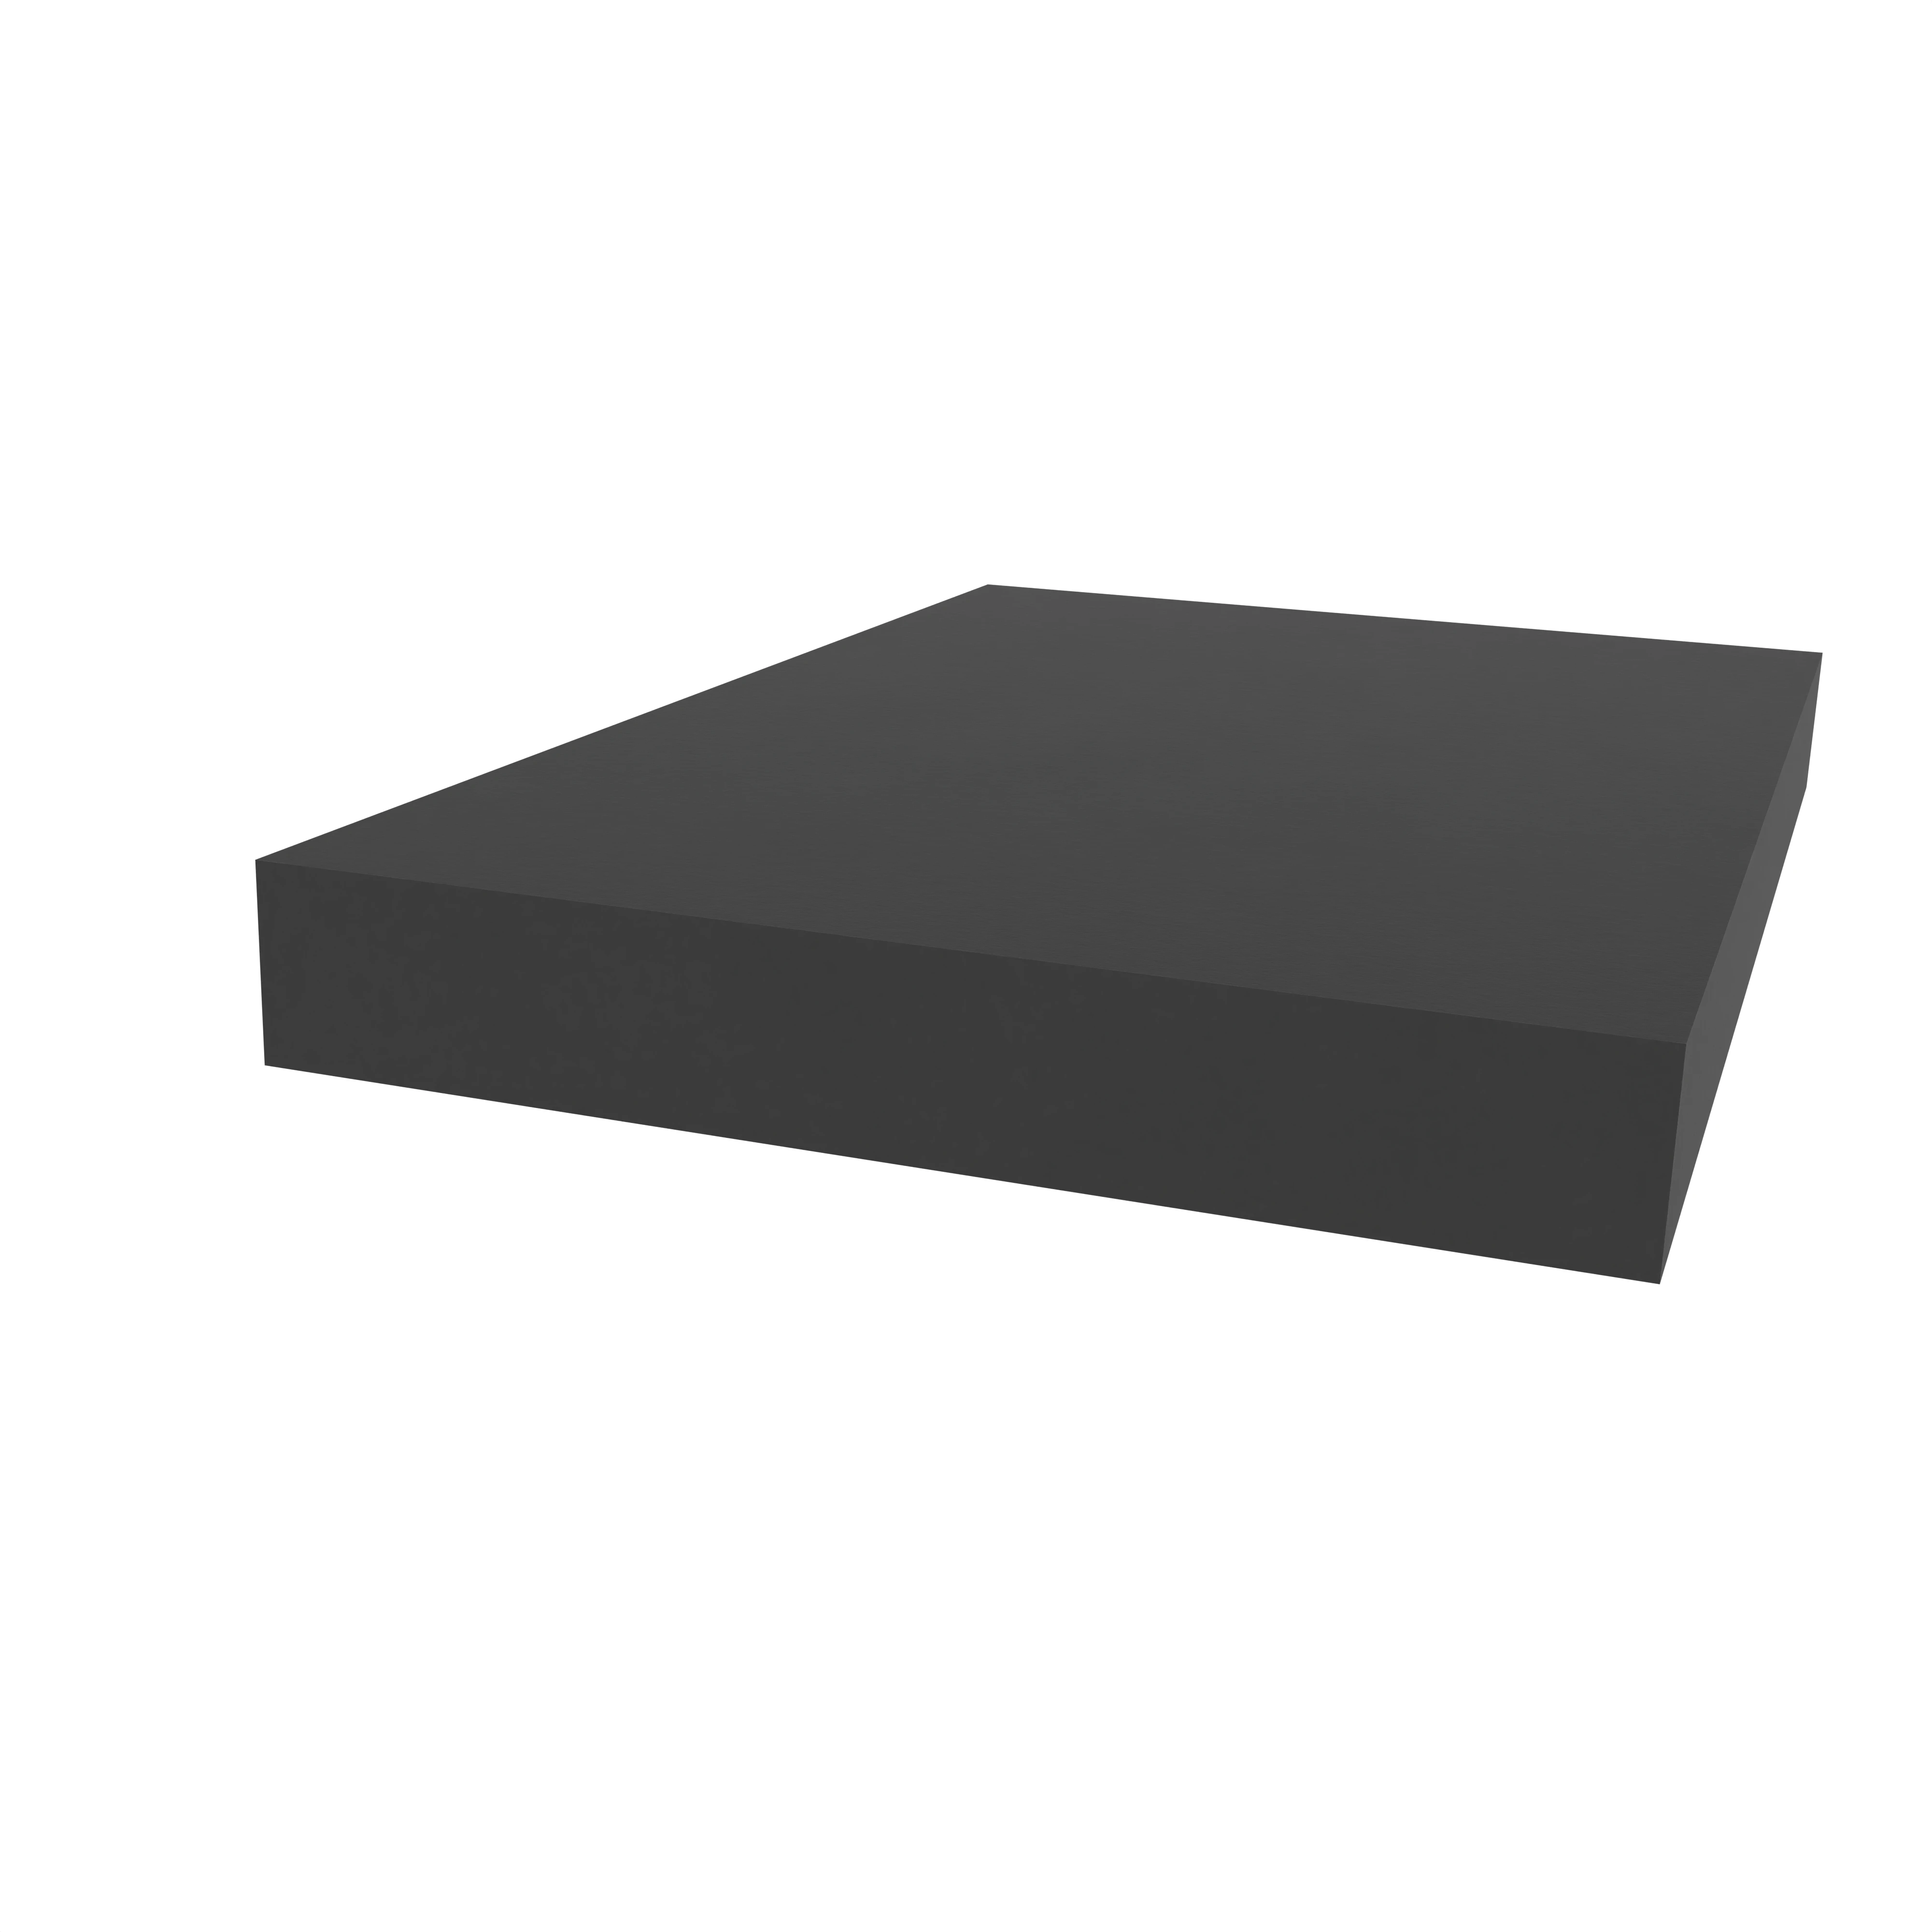 Moosgummidichtung vierkant | 50 mm Breite | Farbe: schwarz